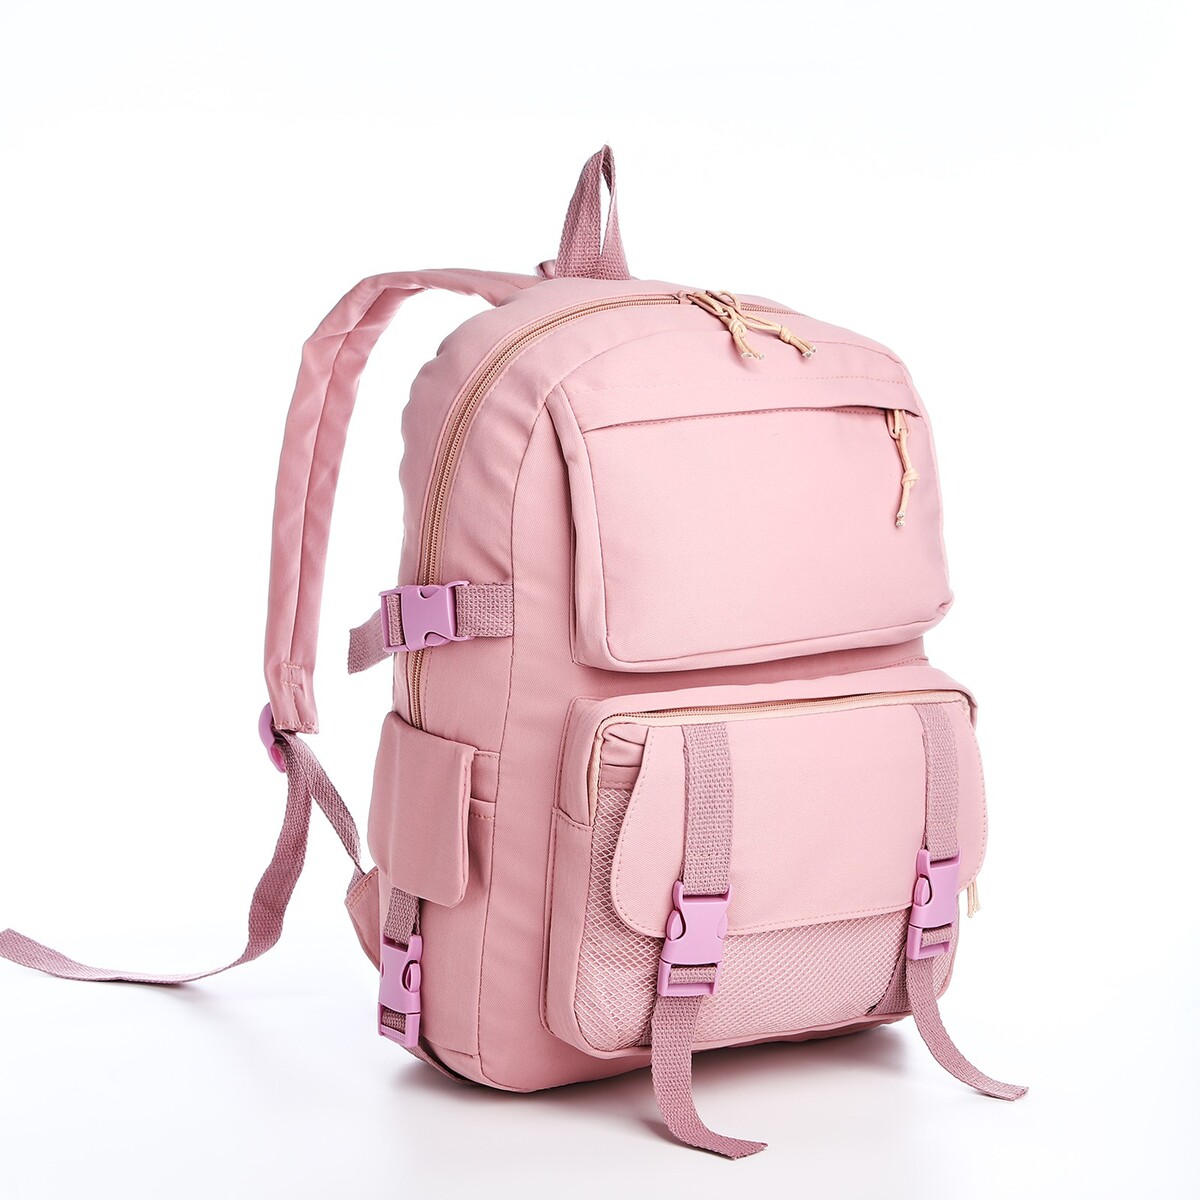 Рюкзак, отдел на молнии, 2 наружных кармана, 2 боковых кармана, цвет розовый рюкзак на молнии 3 наружных кармана розовый белый